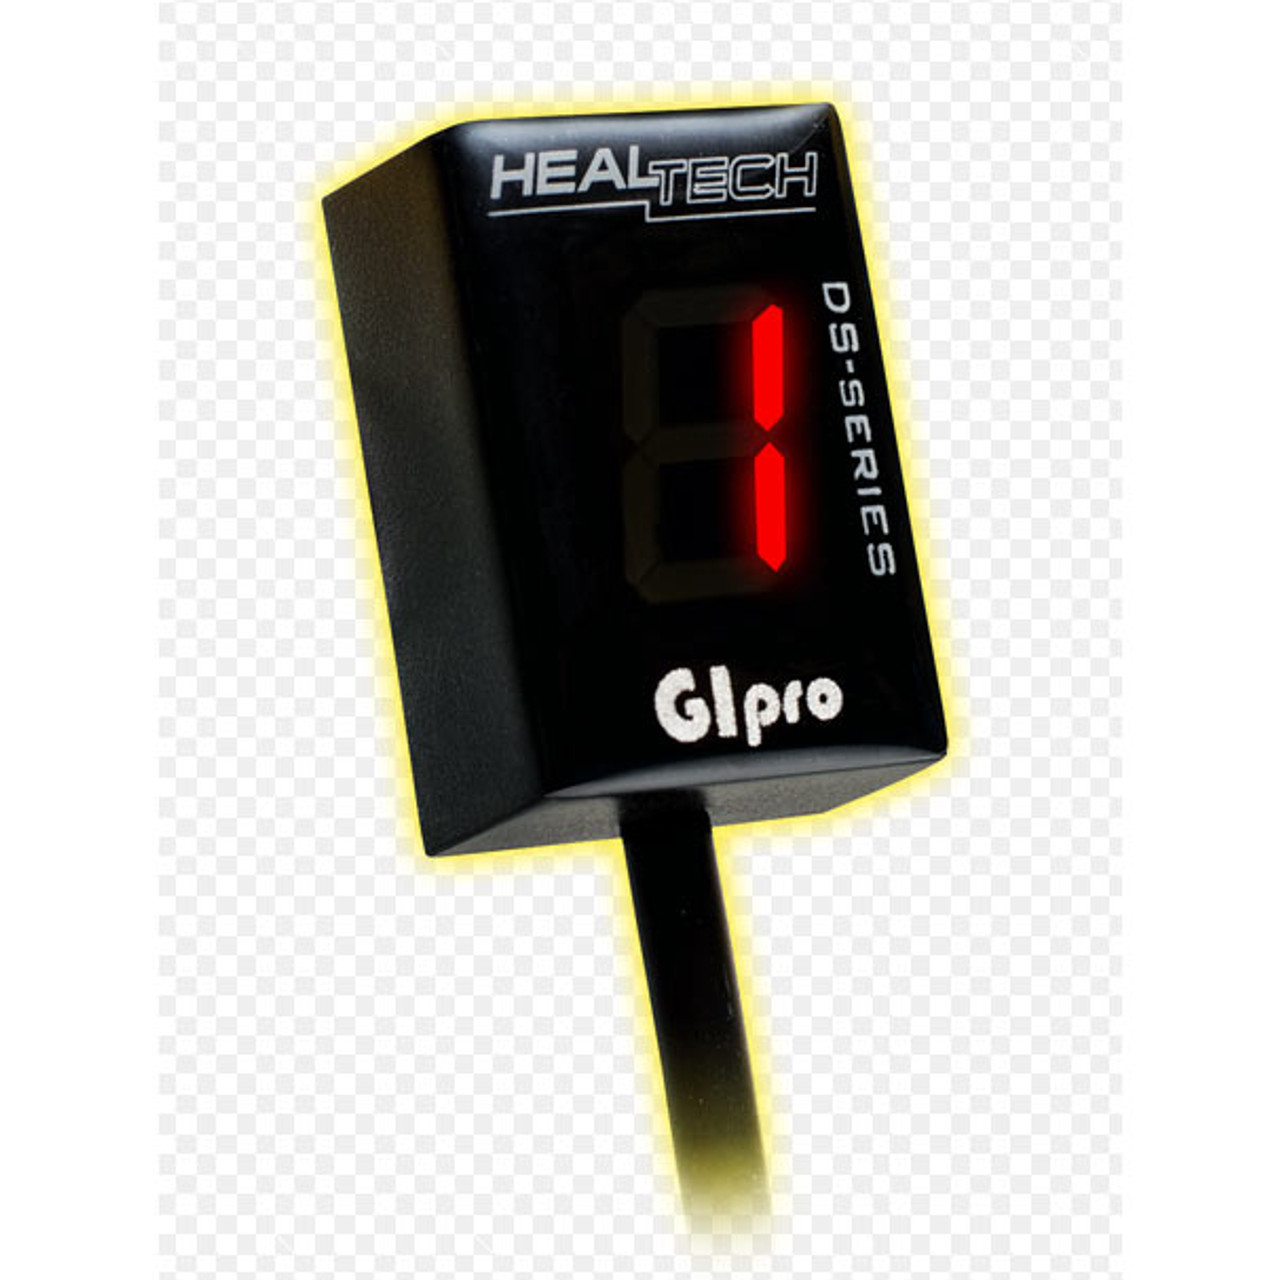 HealTech Gear Indicator GIpro DS for DL1000 V-Strom 04-13